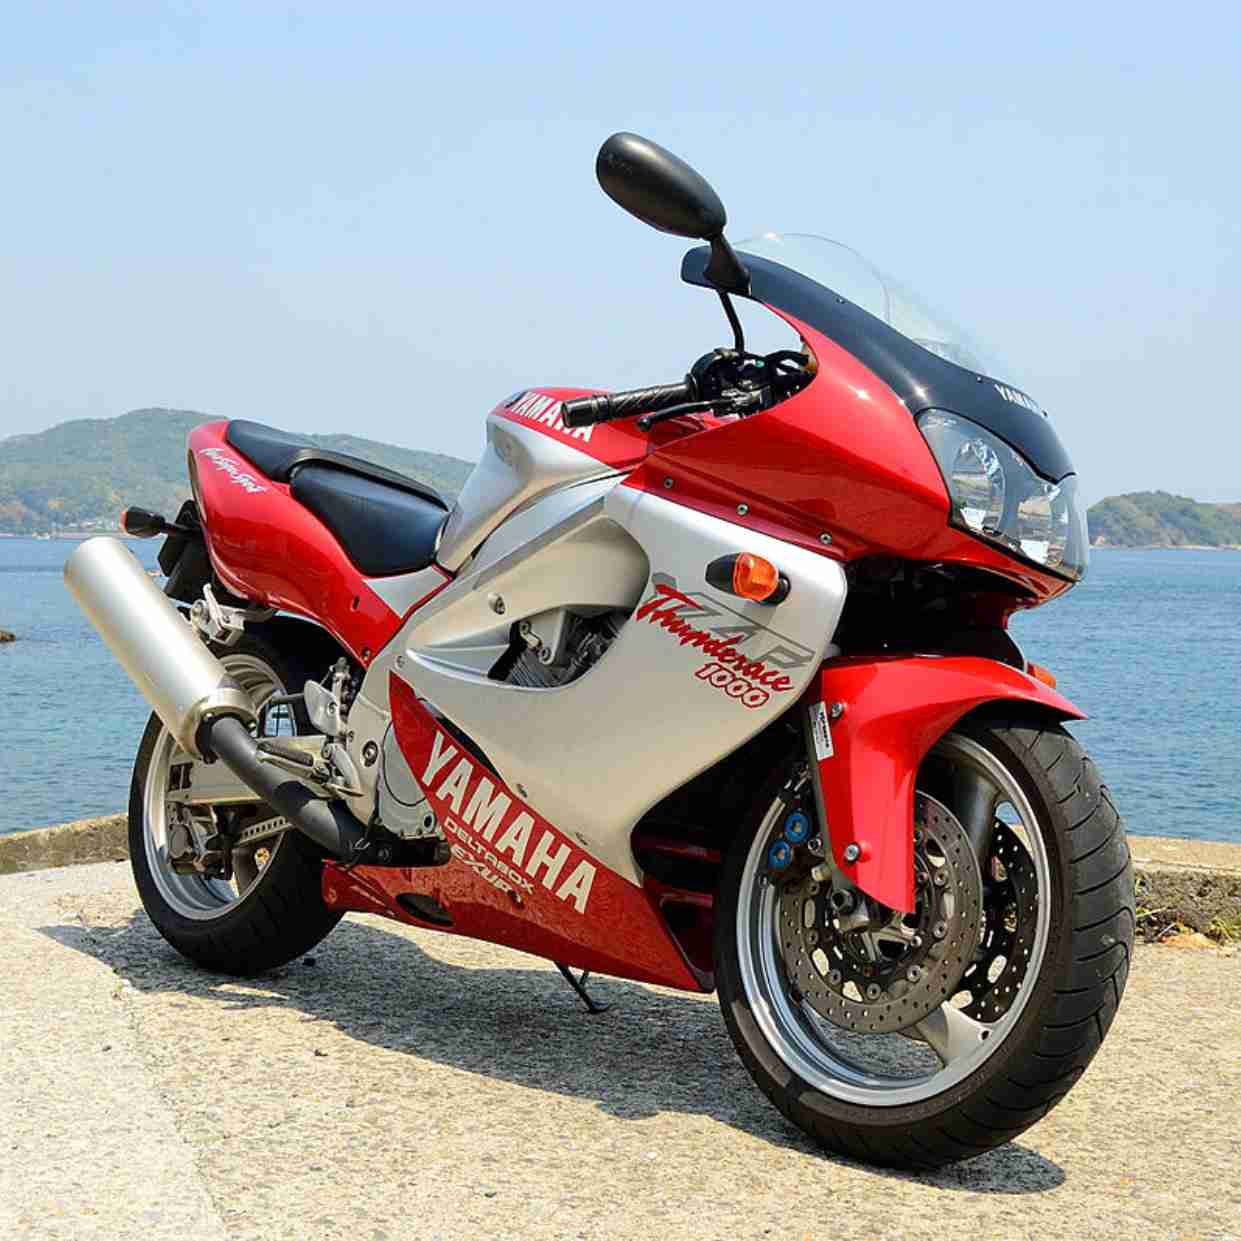 Yamaha yzf 1000 r thunderace - обзор, технические характеристики | mymot - каталог мотоциклов и все объявления об их продаже в одном месте